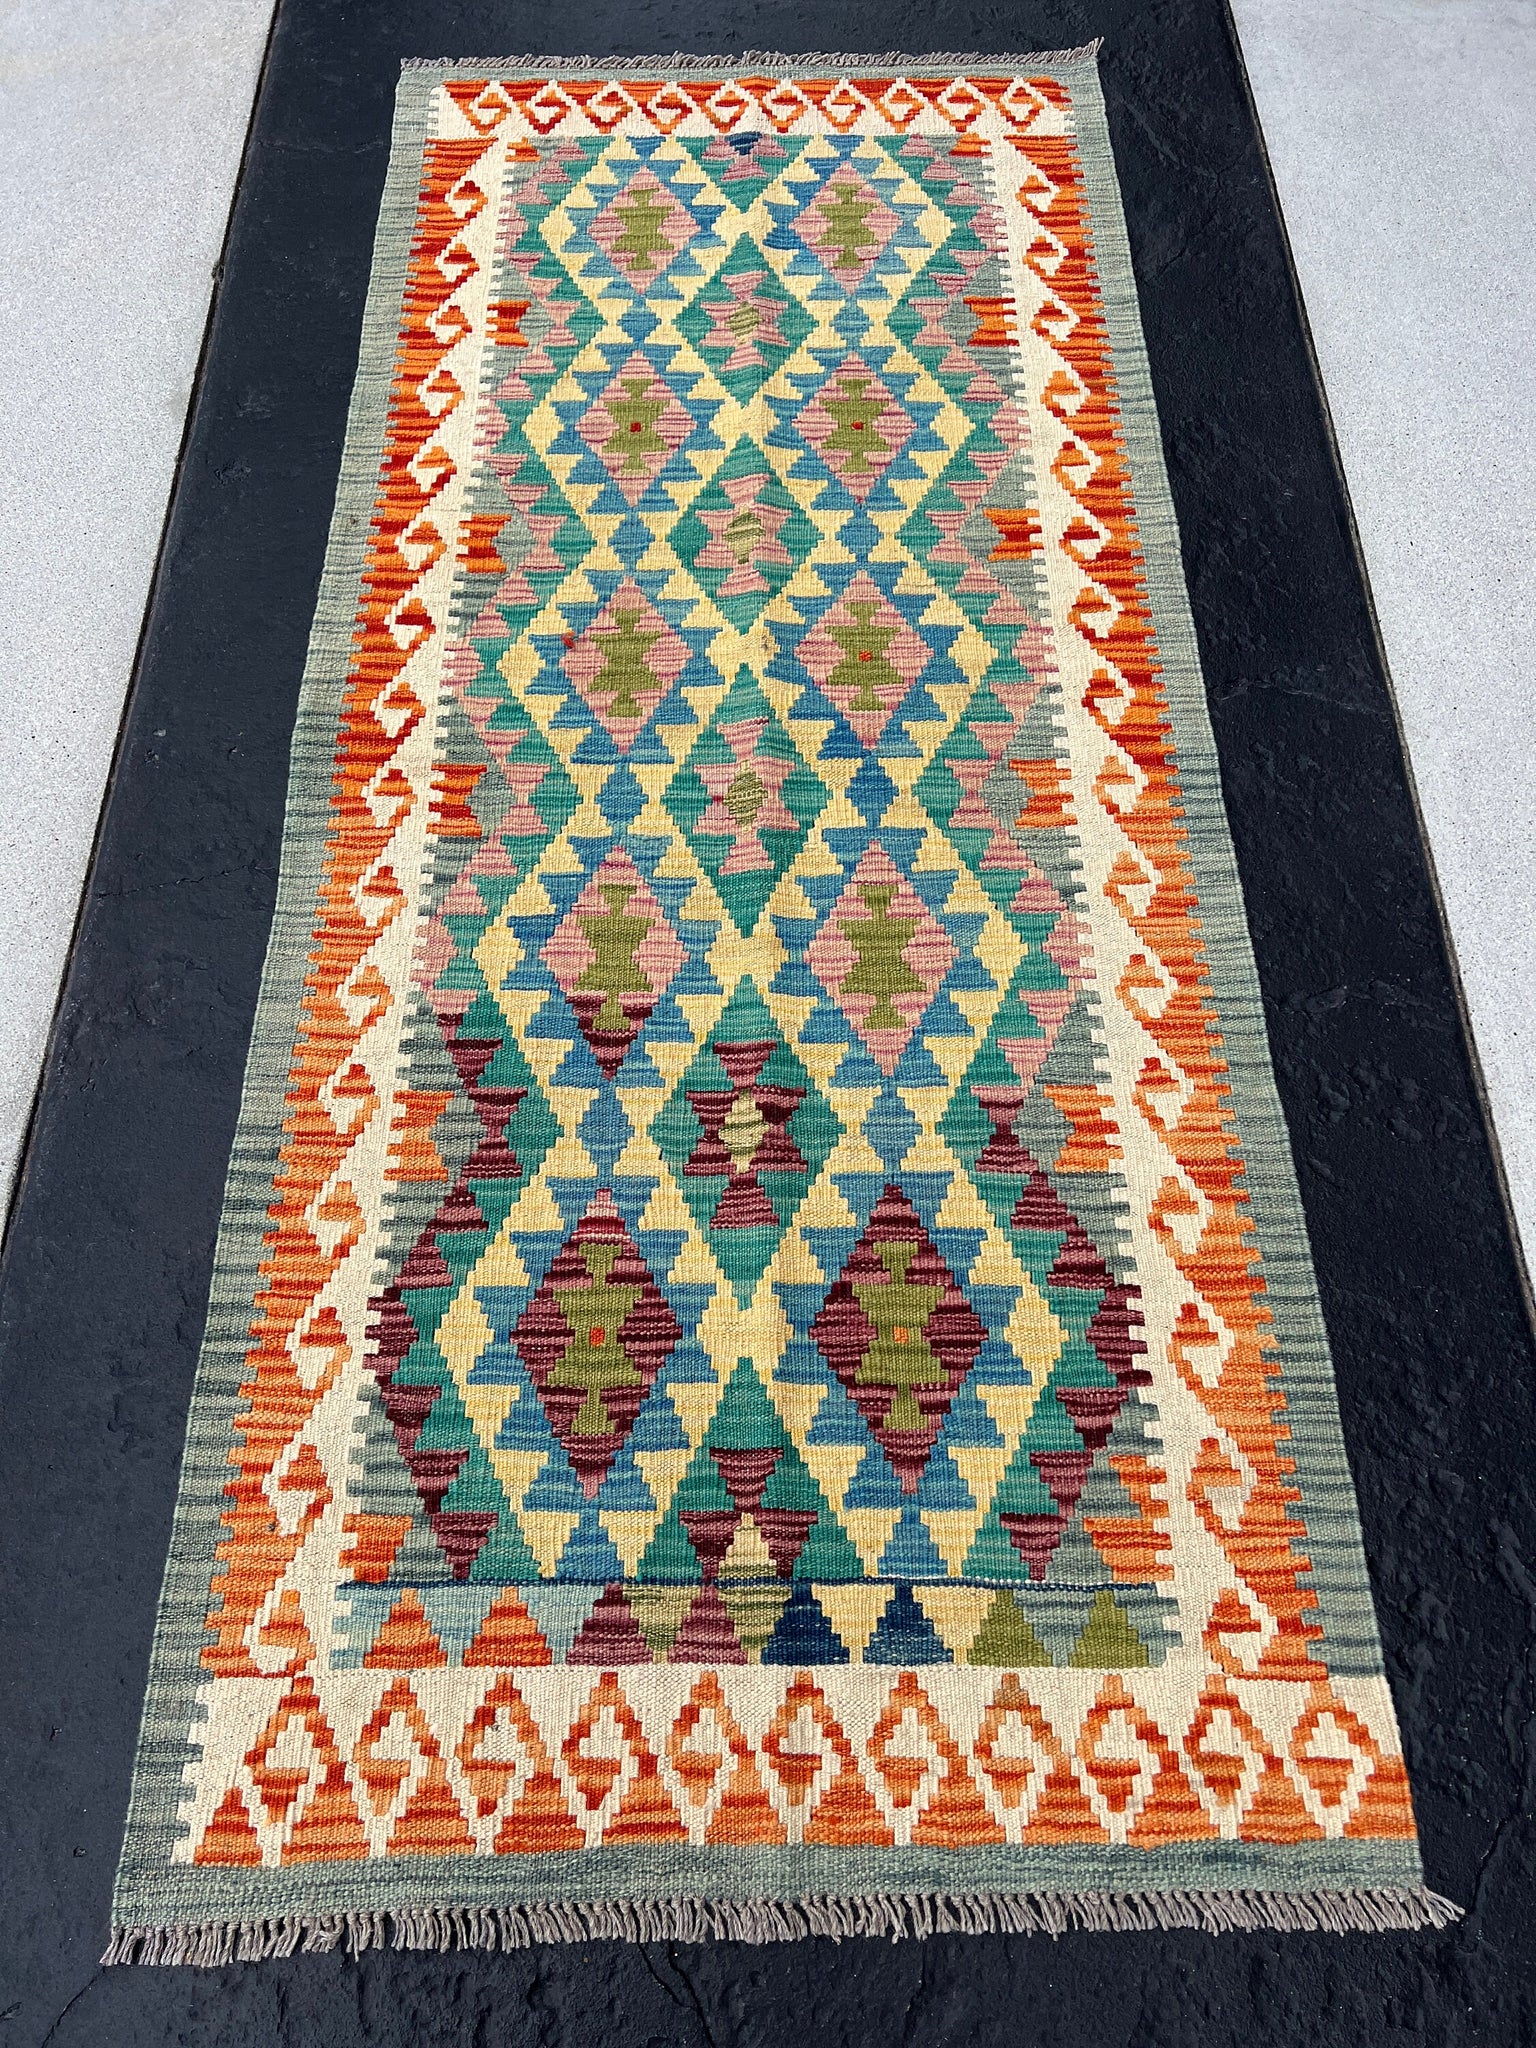 3x7 (100x200) Handmade Afghan Kilim Runner Rug | Sage Grey Burnt Orange Denim Blue Teal Cornsilk Cream Beige Purple Pink | Wool